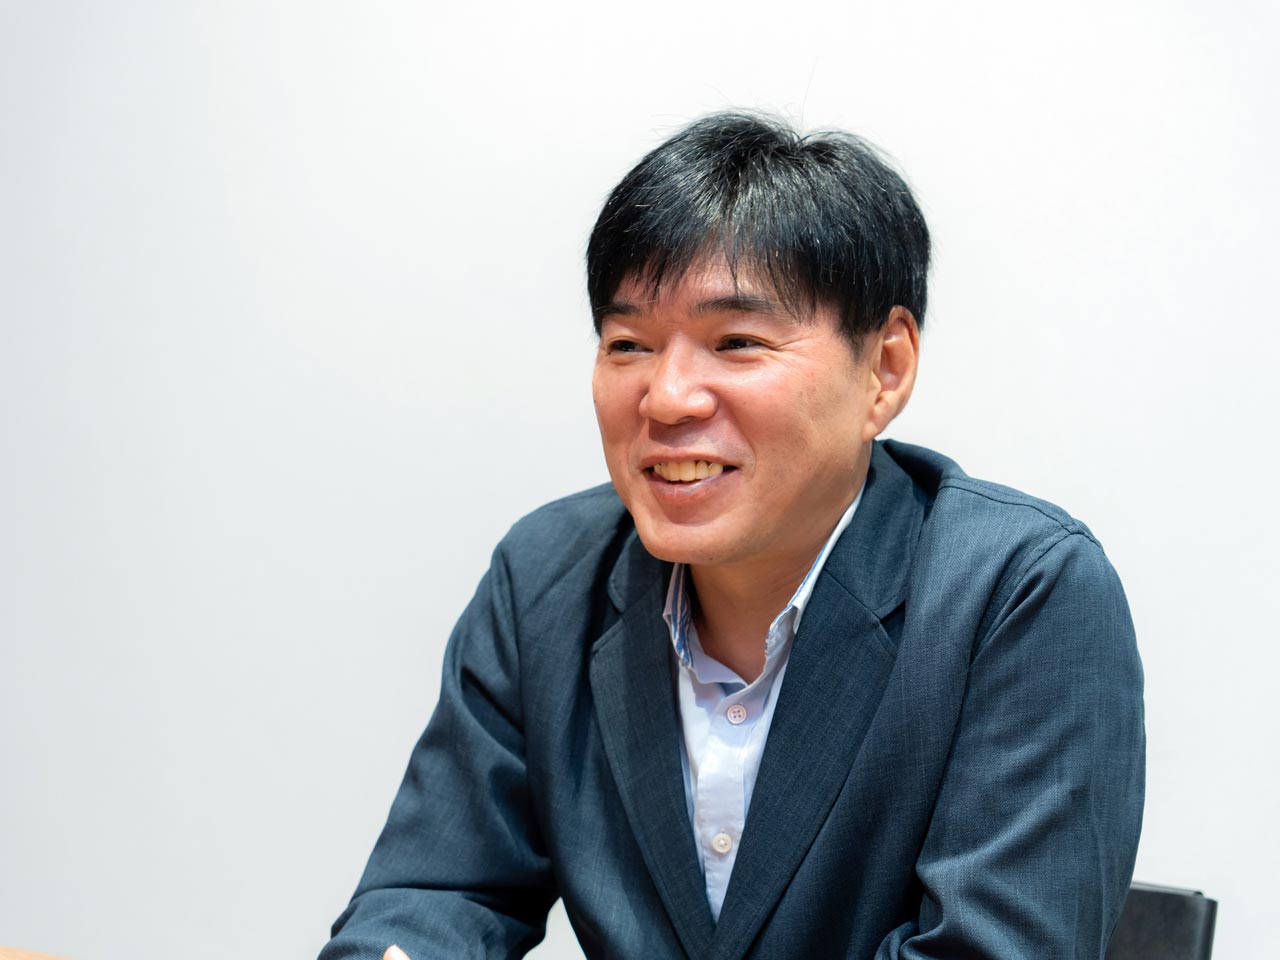 代表の鎌田俊一氏がこれまでの30年以上に渡る業務経験を強みに、ITを通じて顧客のビジネスを支援。